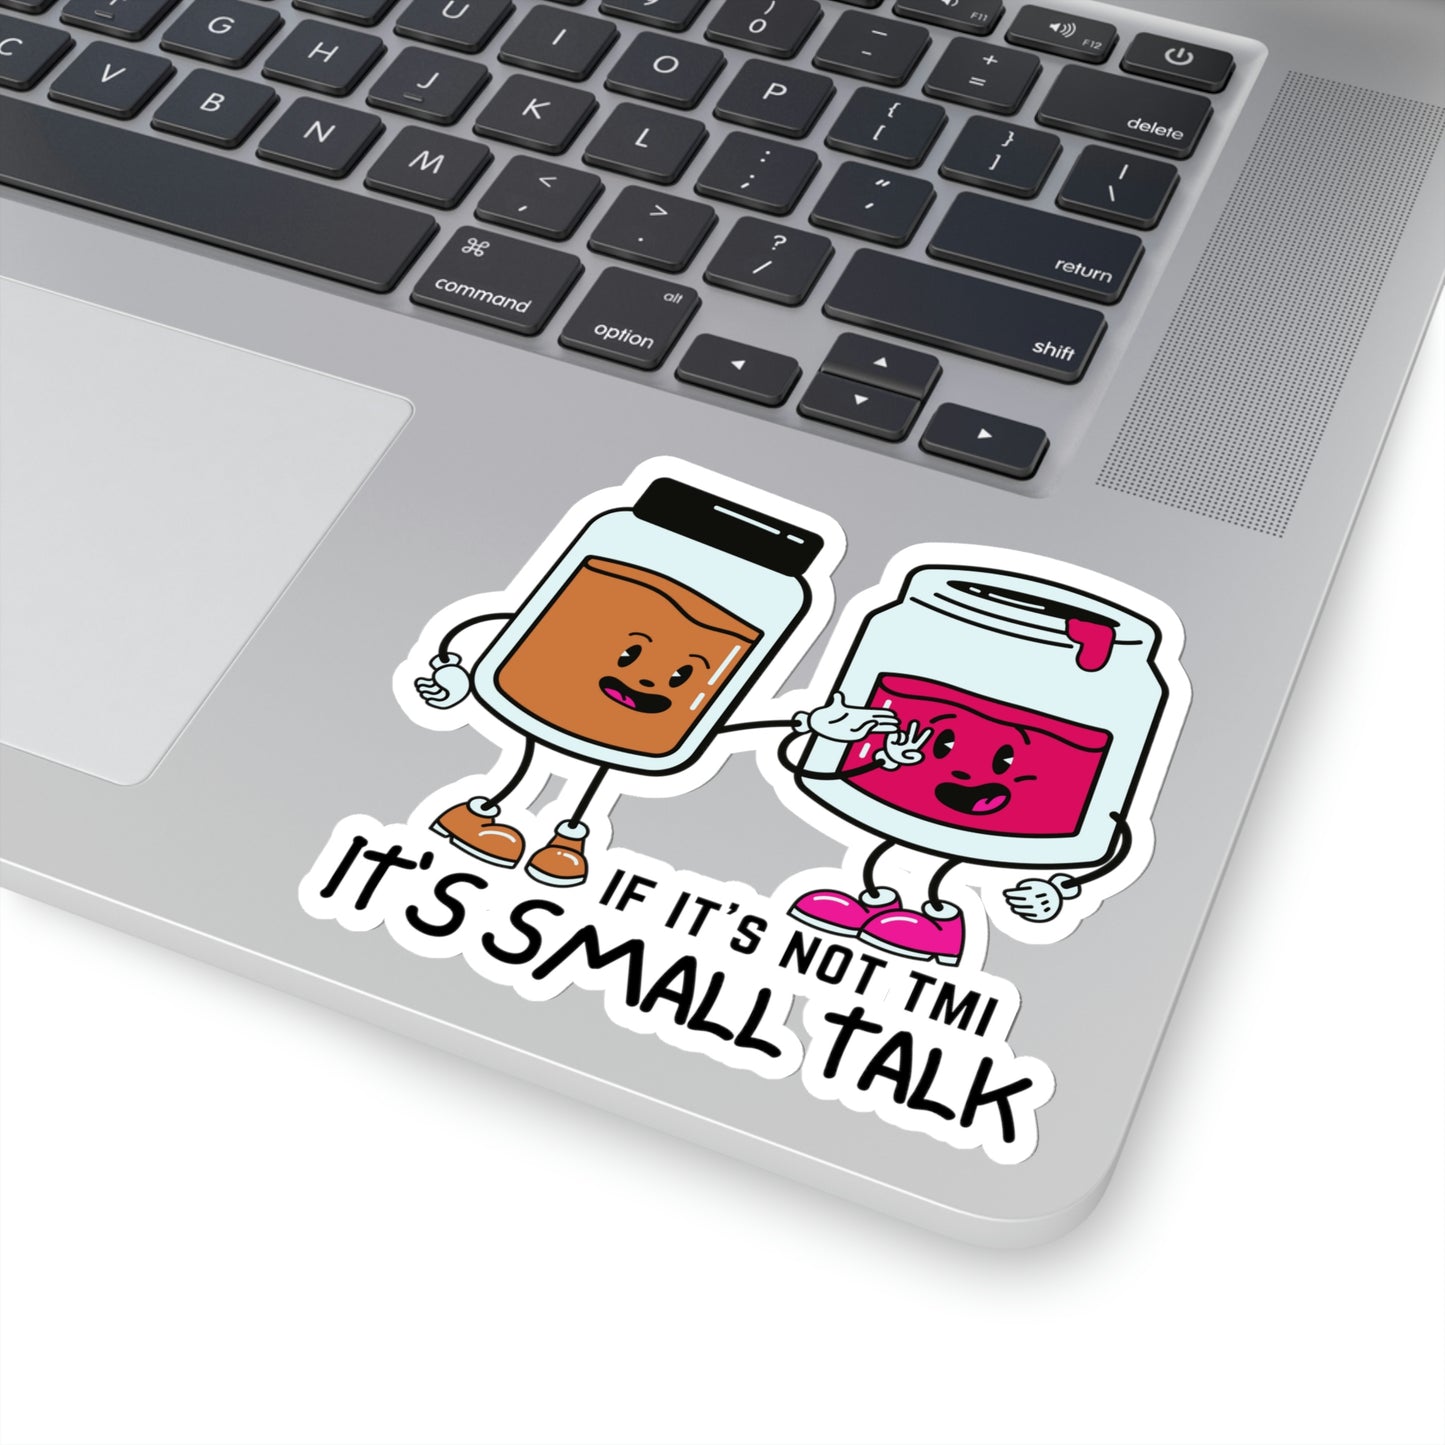 "If It's Not TMI, It's Small Talk" Kiss-Cut Stickers